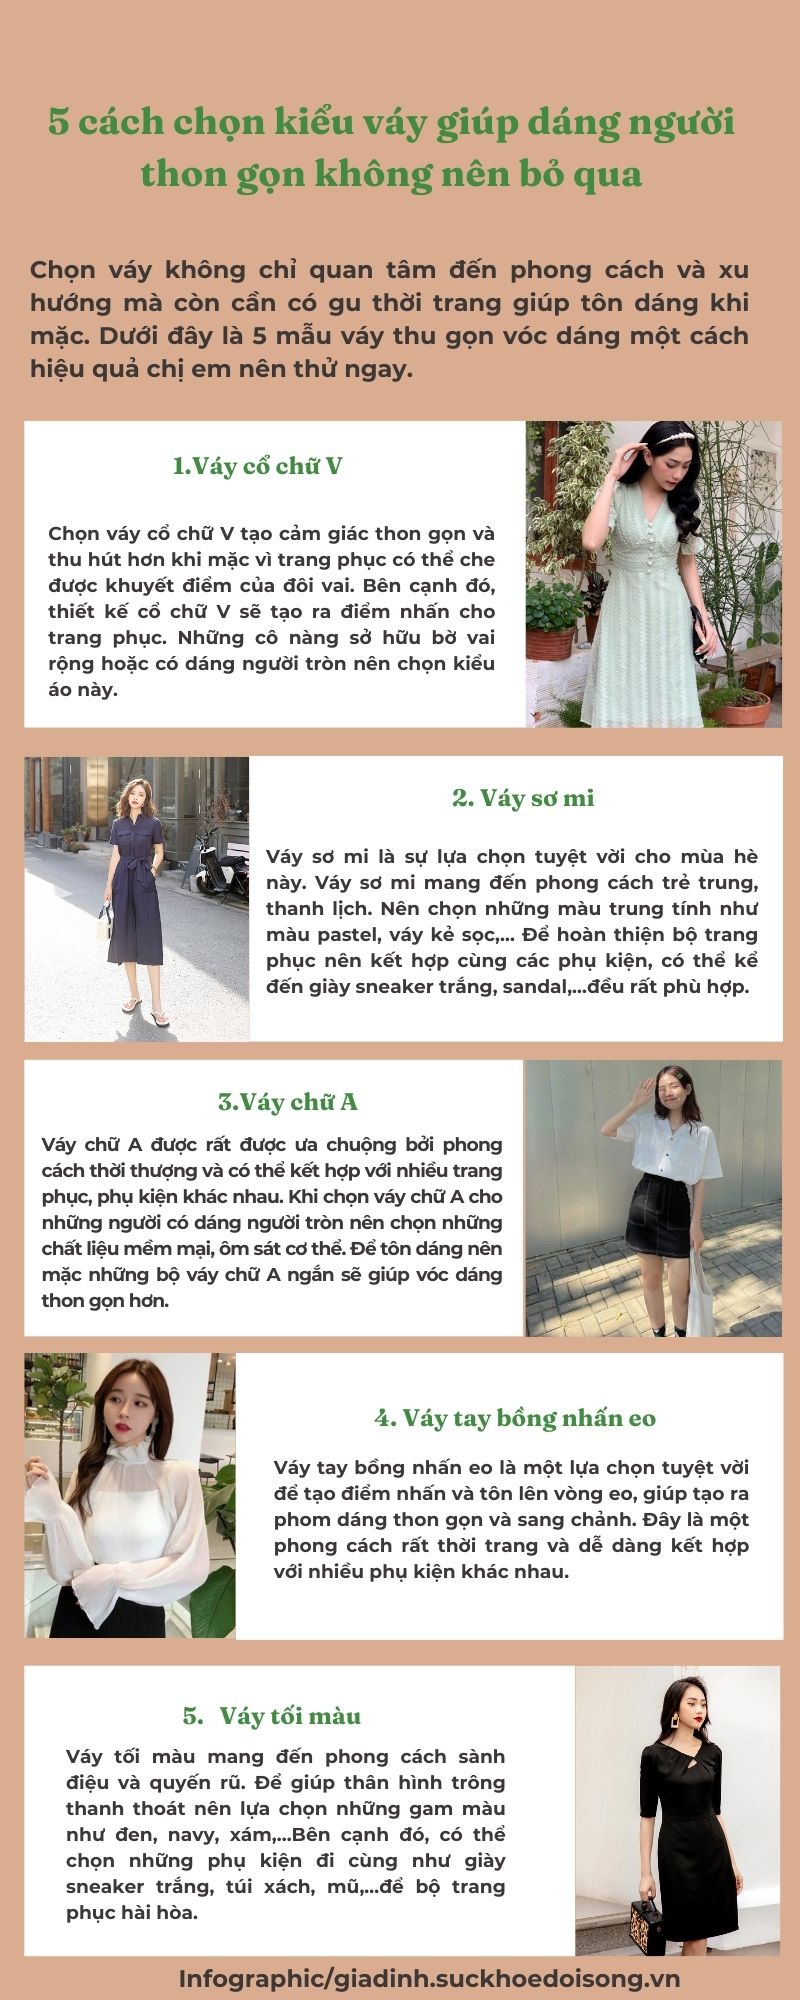 5 kiểu váy giúp dáng người thon gọn các nàng muốn đôn dáng nên lựa chọn- Ảnh 1.